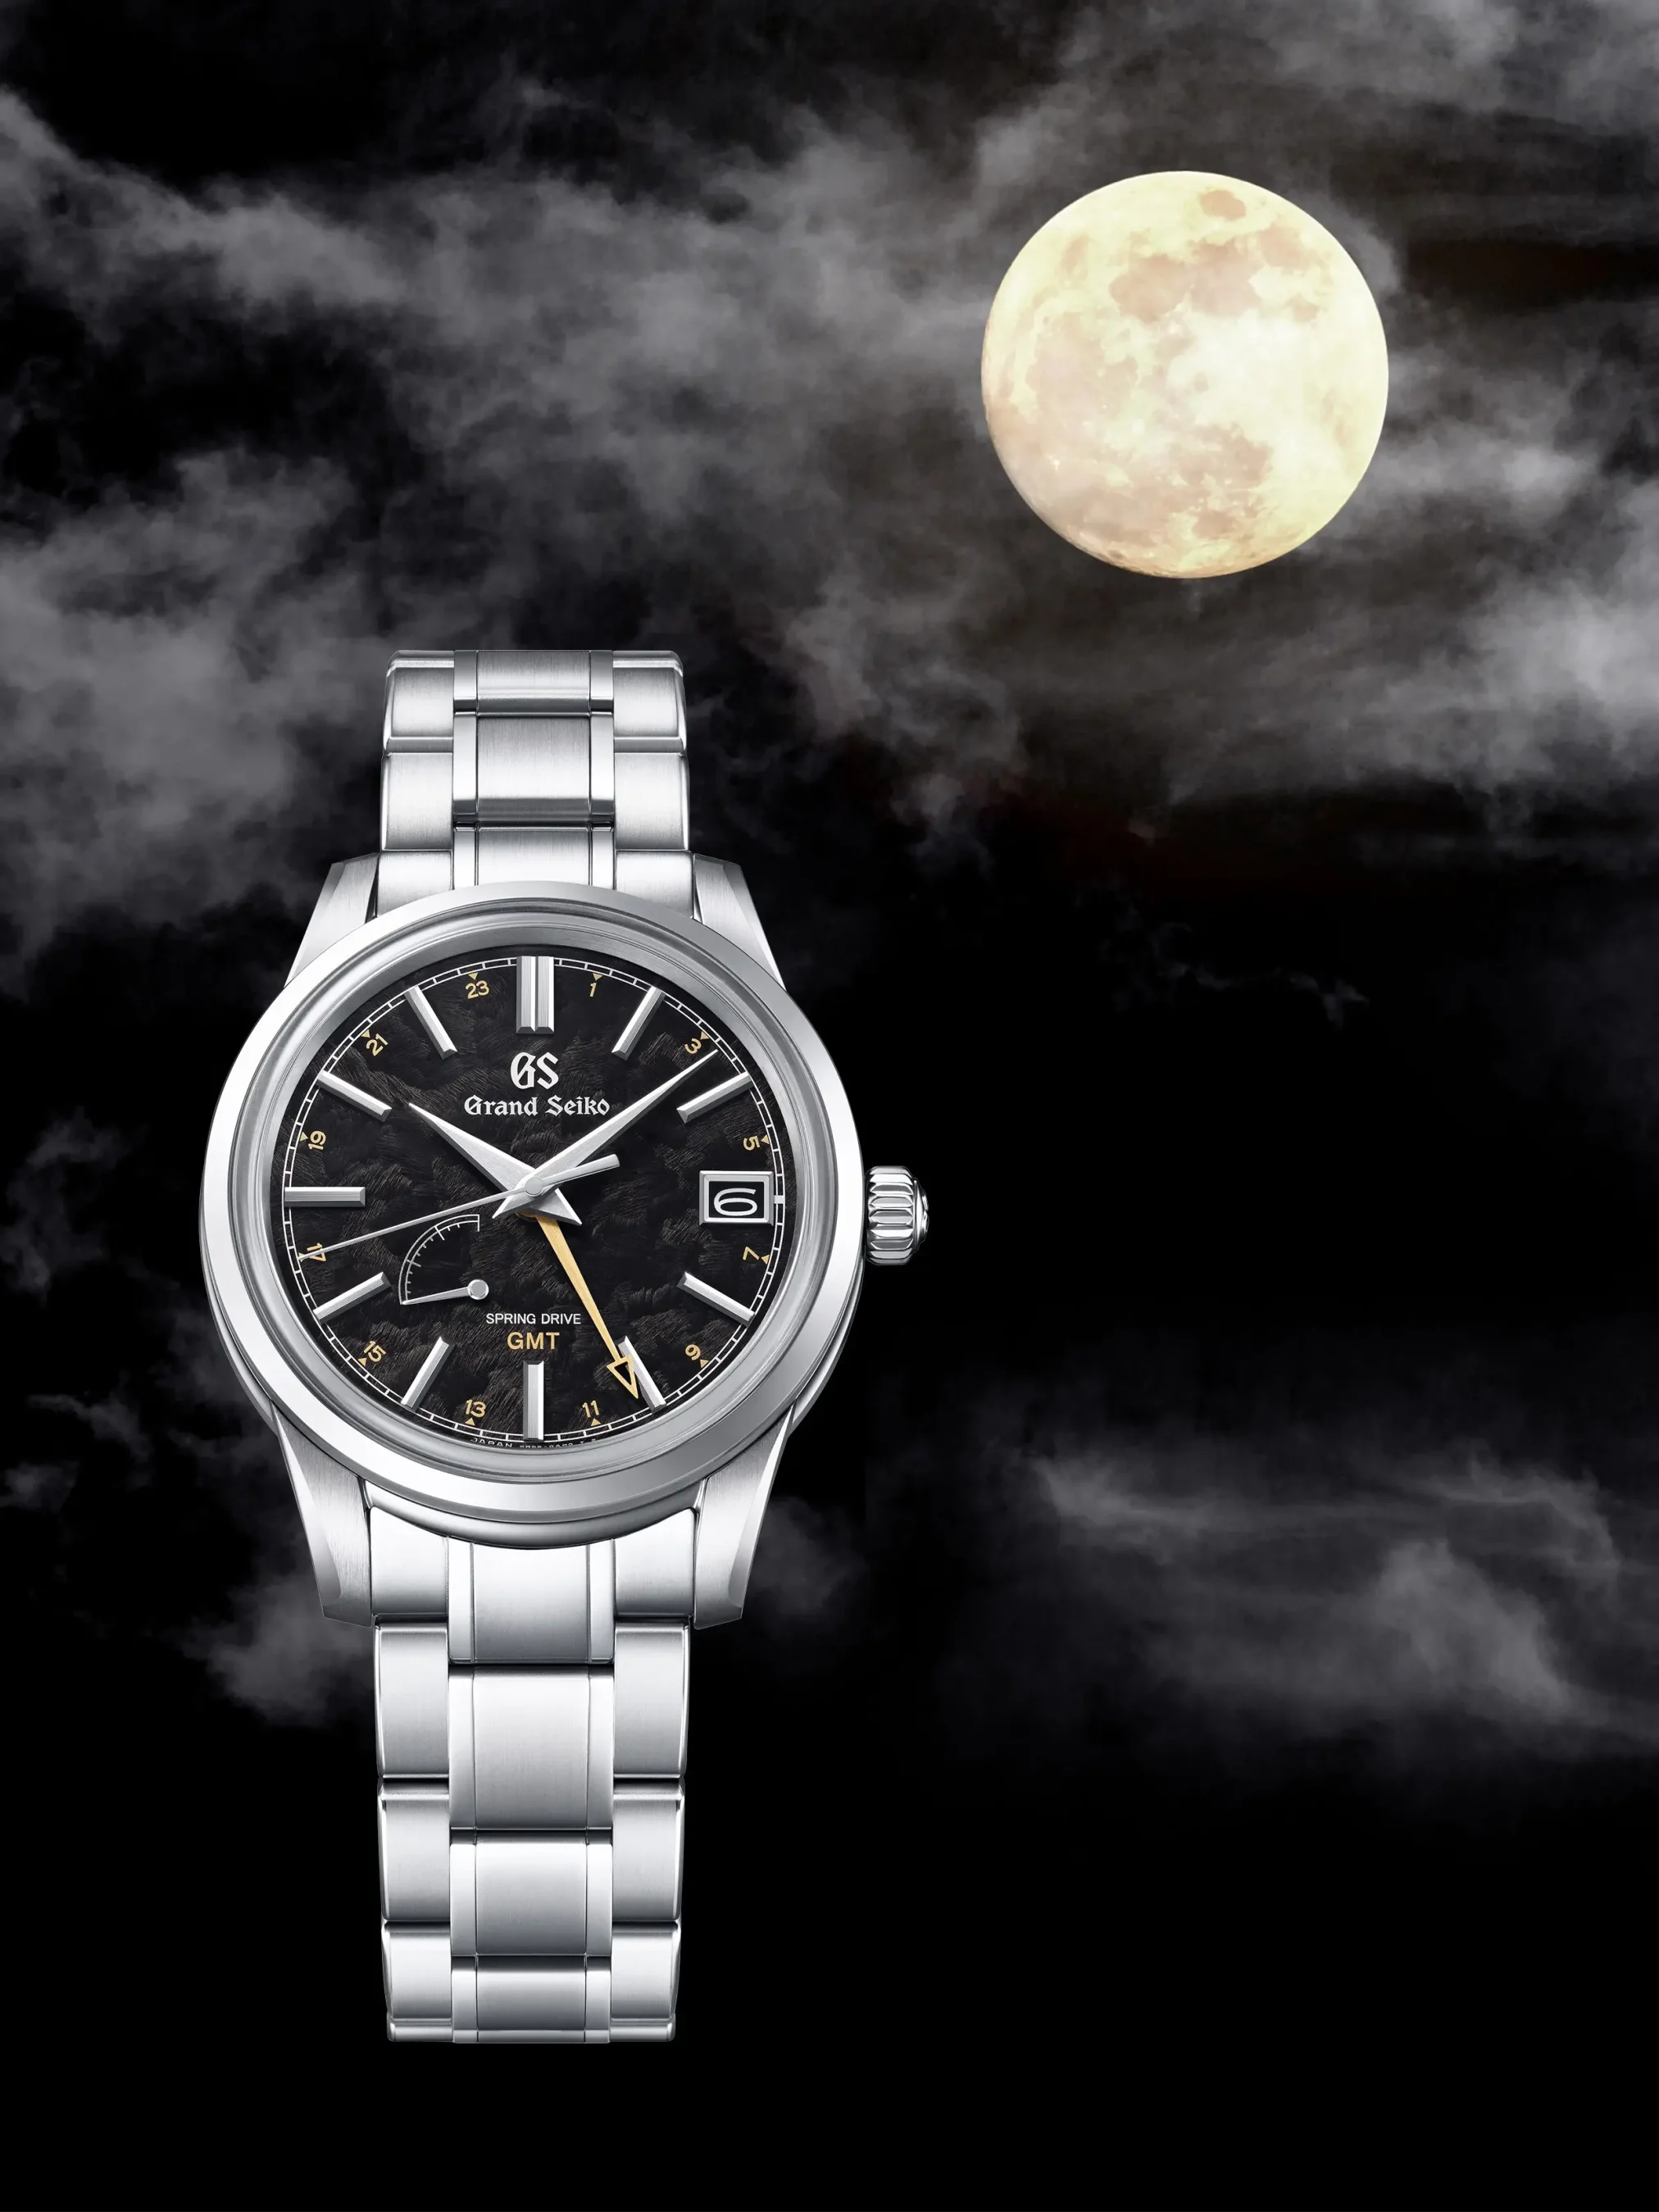 Đồng hồ Grand Seiko Elegance GMT Four Seasons Kanro SBGE271 mặt số màu đen. Dây đeo bằng thép. Thân vỏ bằng thép.